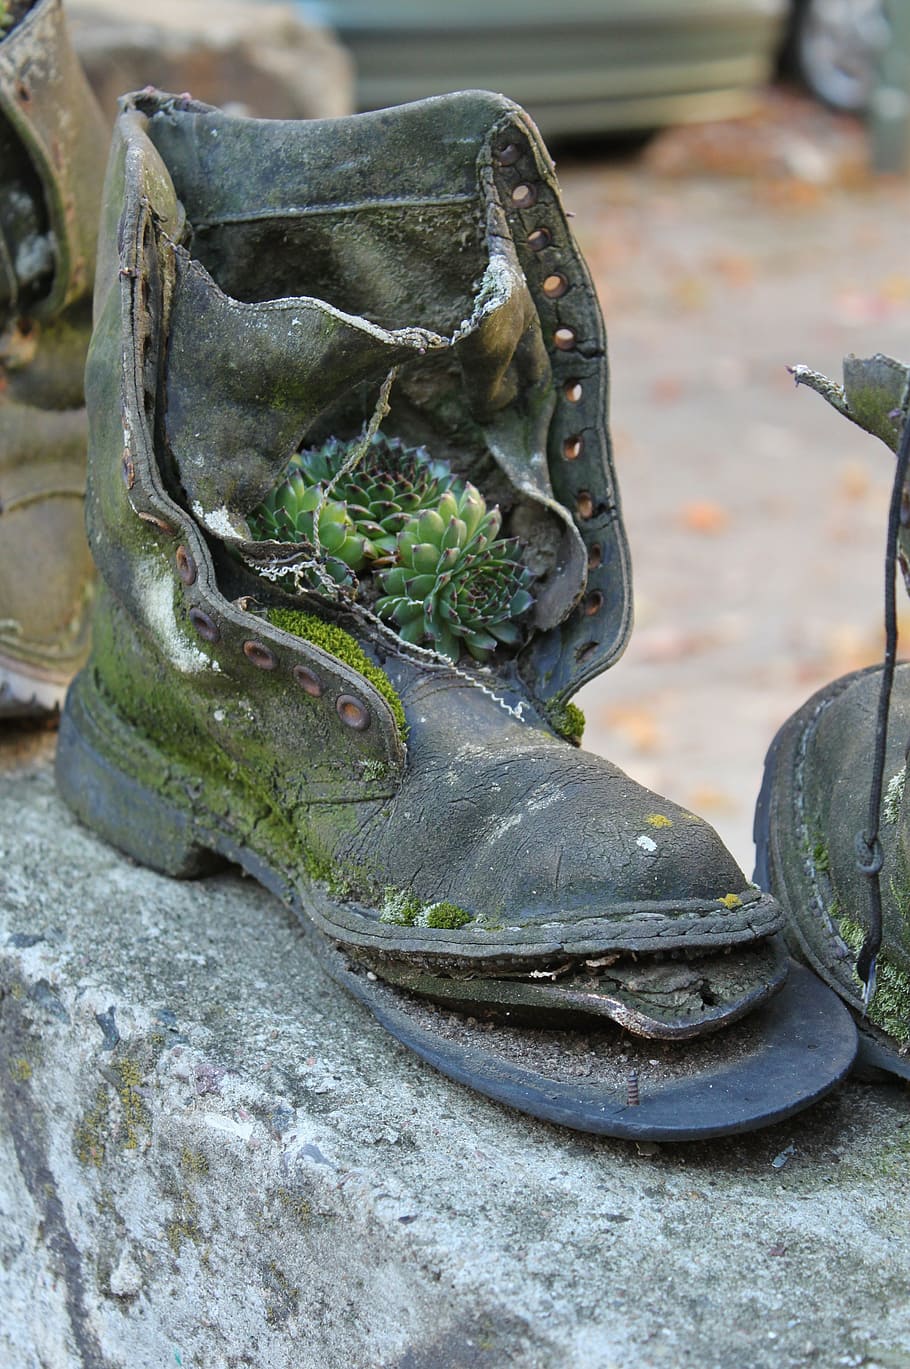 sepatu bot, sepatu boot bundeswehr, sepatu, sol sepatu, rusak, tua, busuk, sementara, wadah tanaman, ditanam